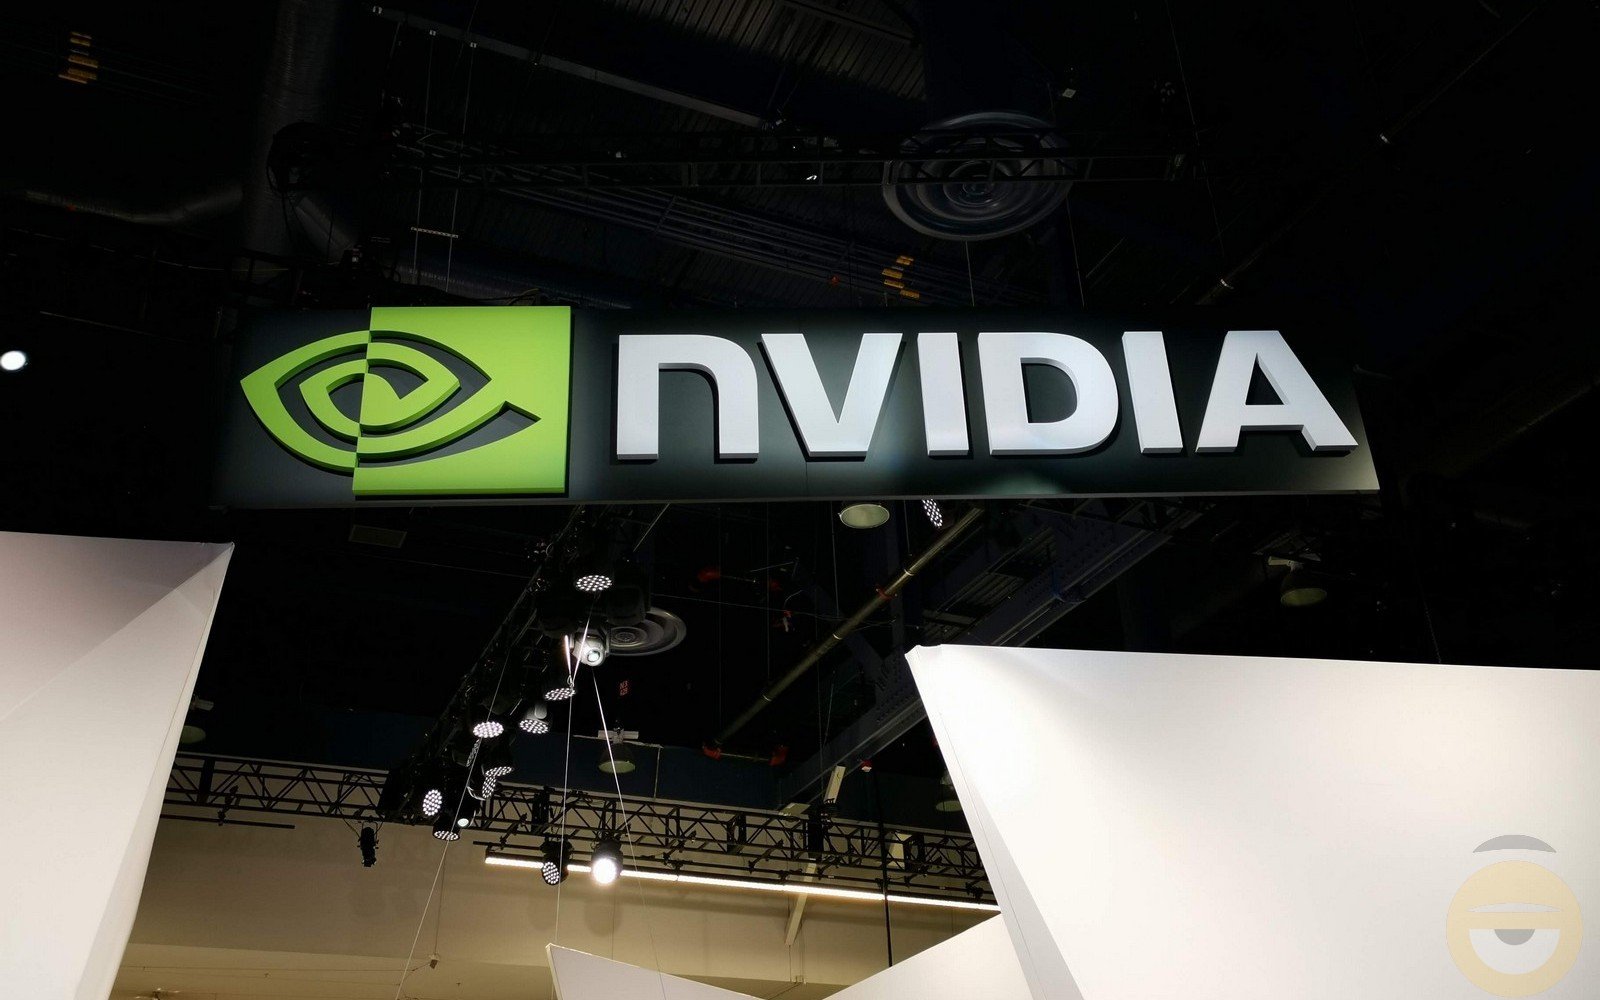 Η Nvidia έβγαλε 5 δις δολάρια κατά την περίοδο ελλείψεων σε GPU και αναμένει να το ξανακάνει